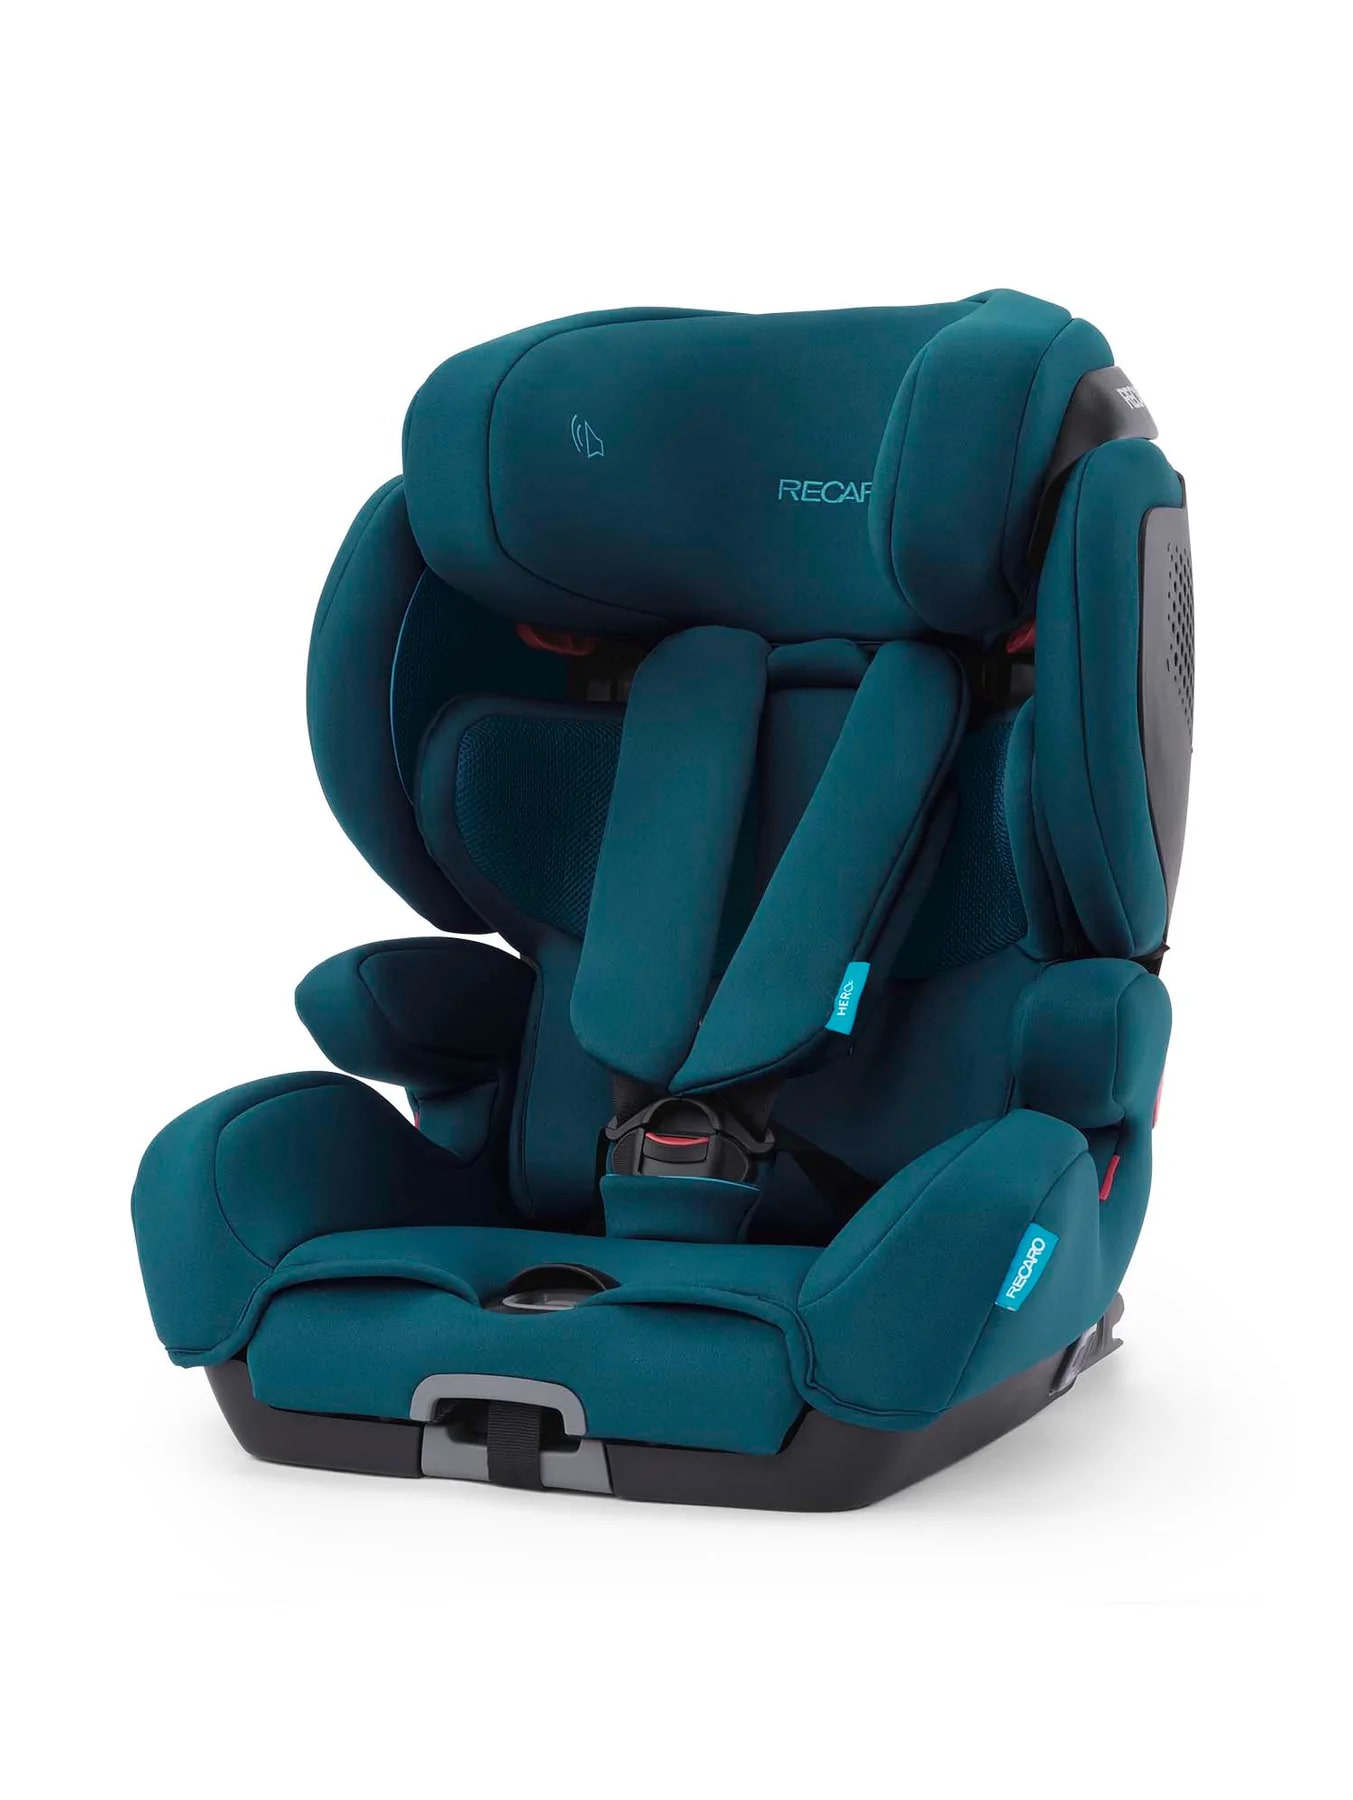 Recaro Car Seat Tian Elite - Select Teal Green